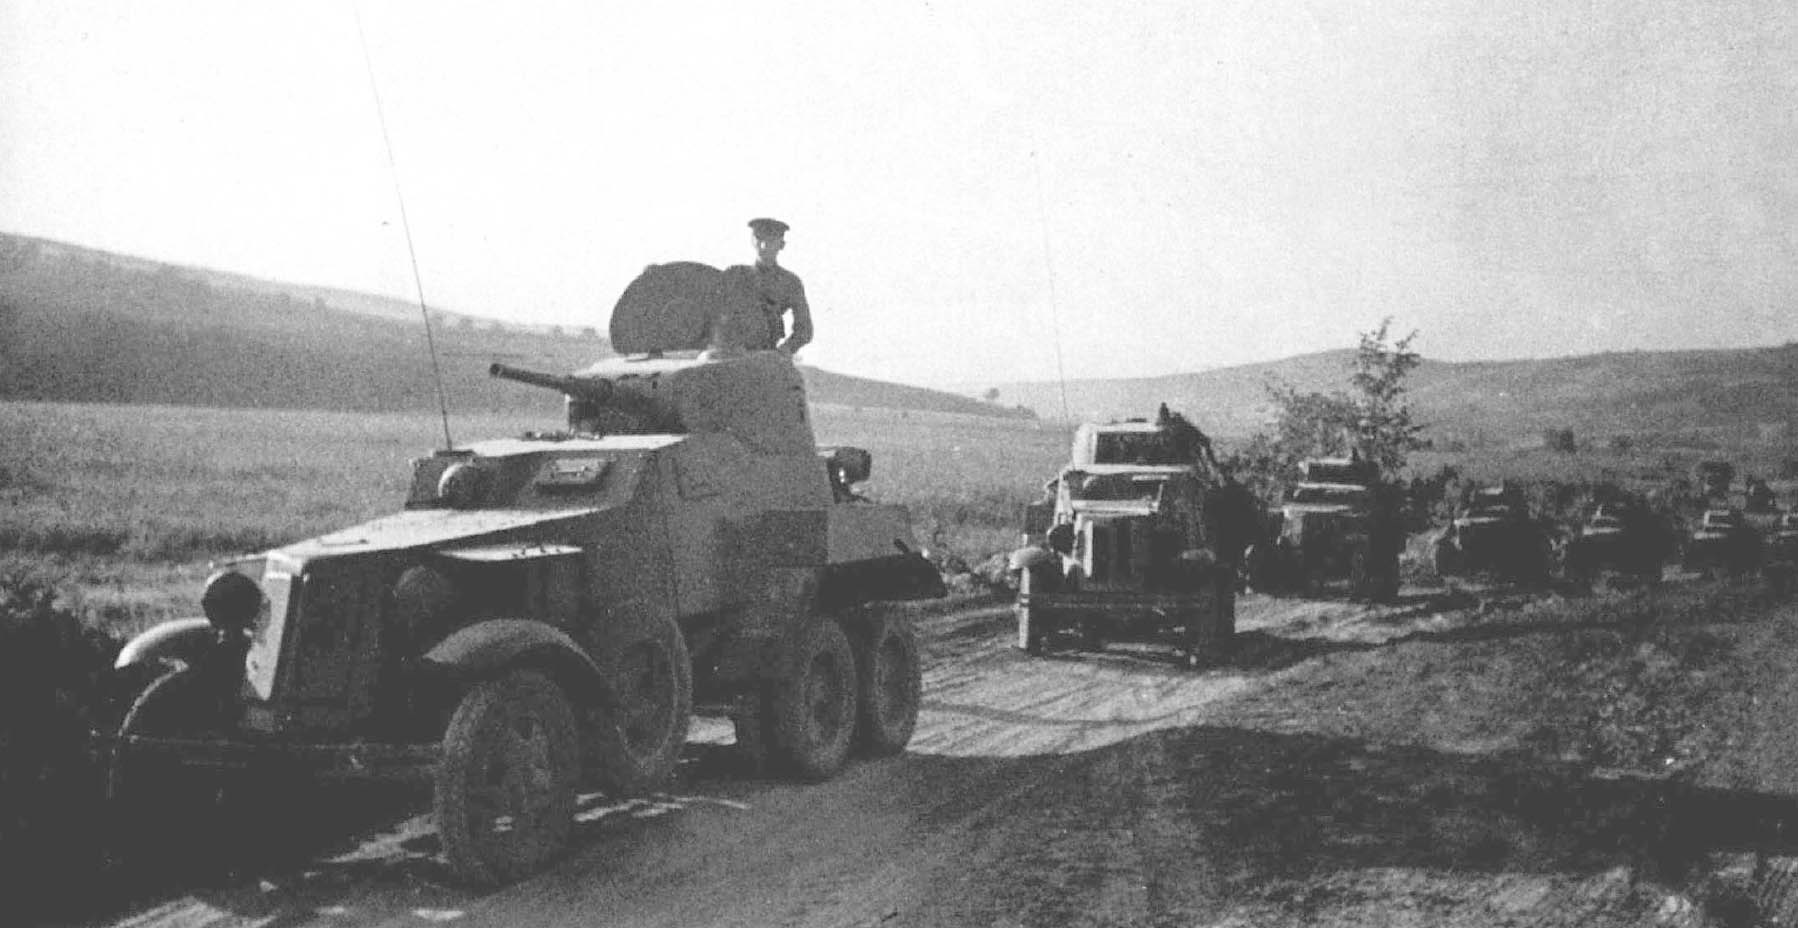 Ба э. Бронеавтомобили РККА ба-10. Ба-10 бронеавтомобиль РОА. Бронеавтомобиль ба-10 1941. Танк ба 10.